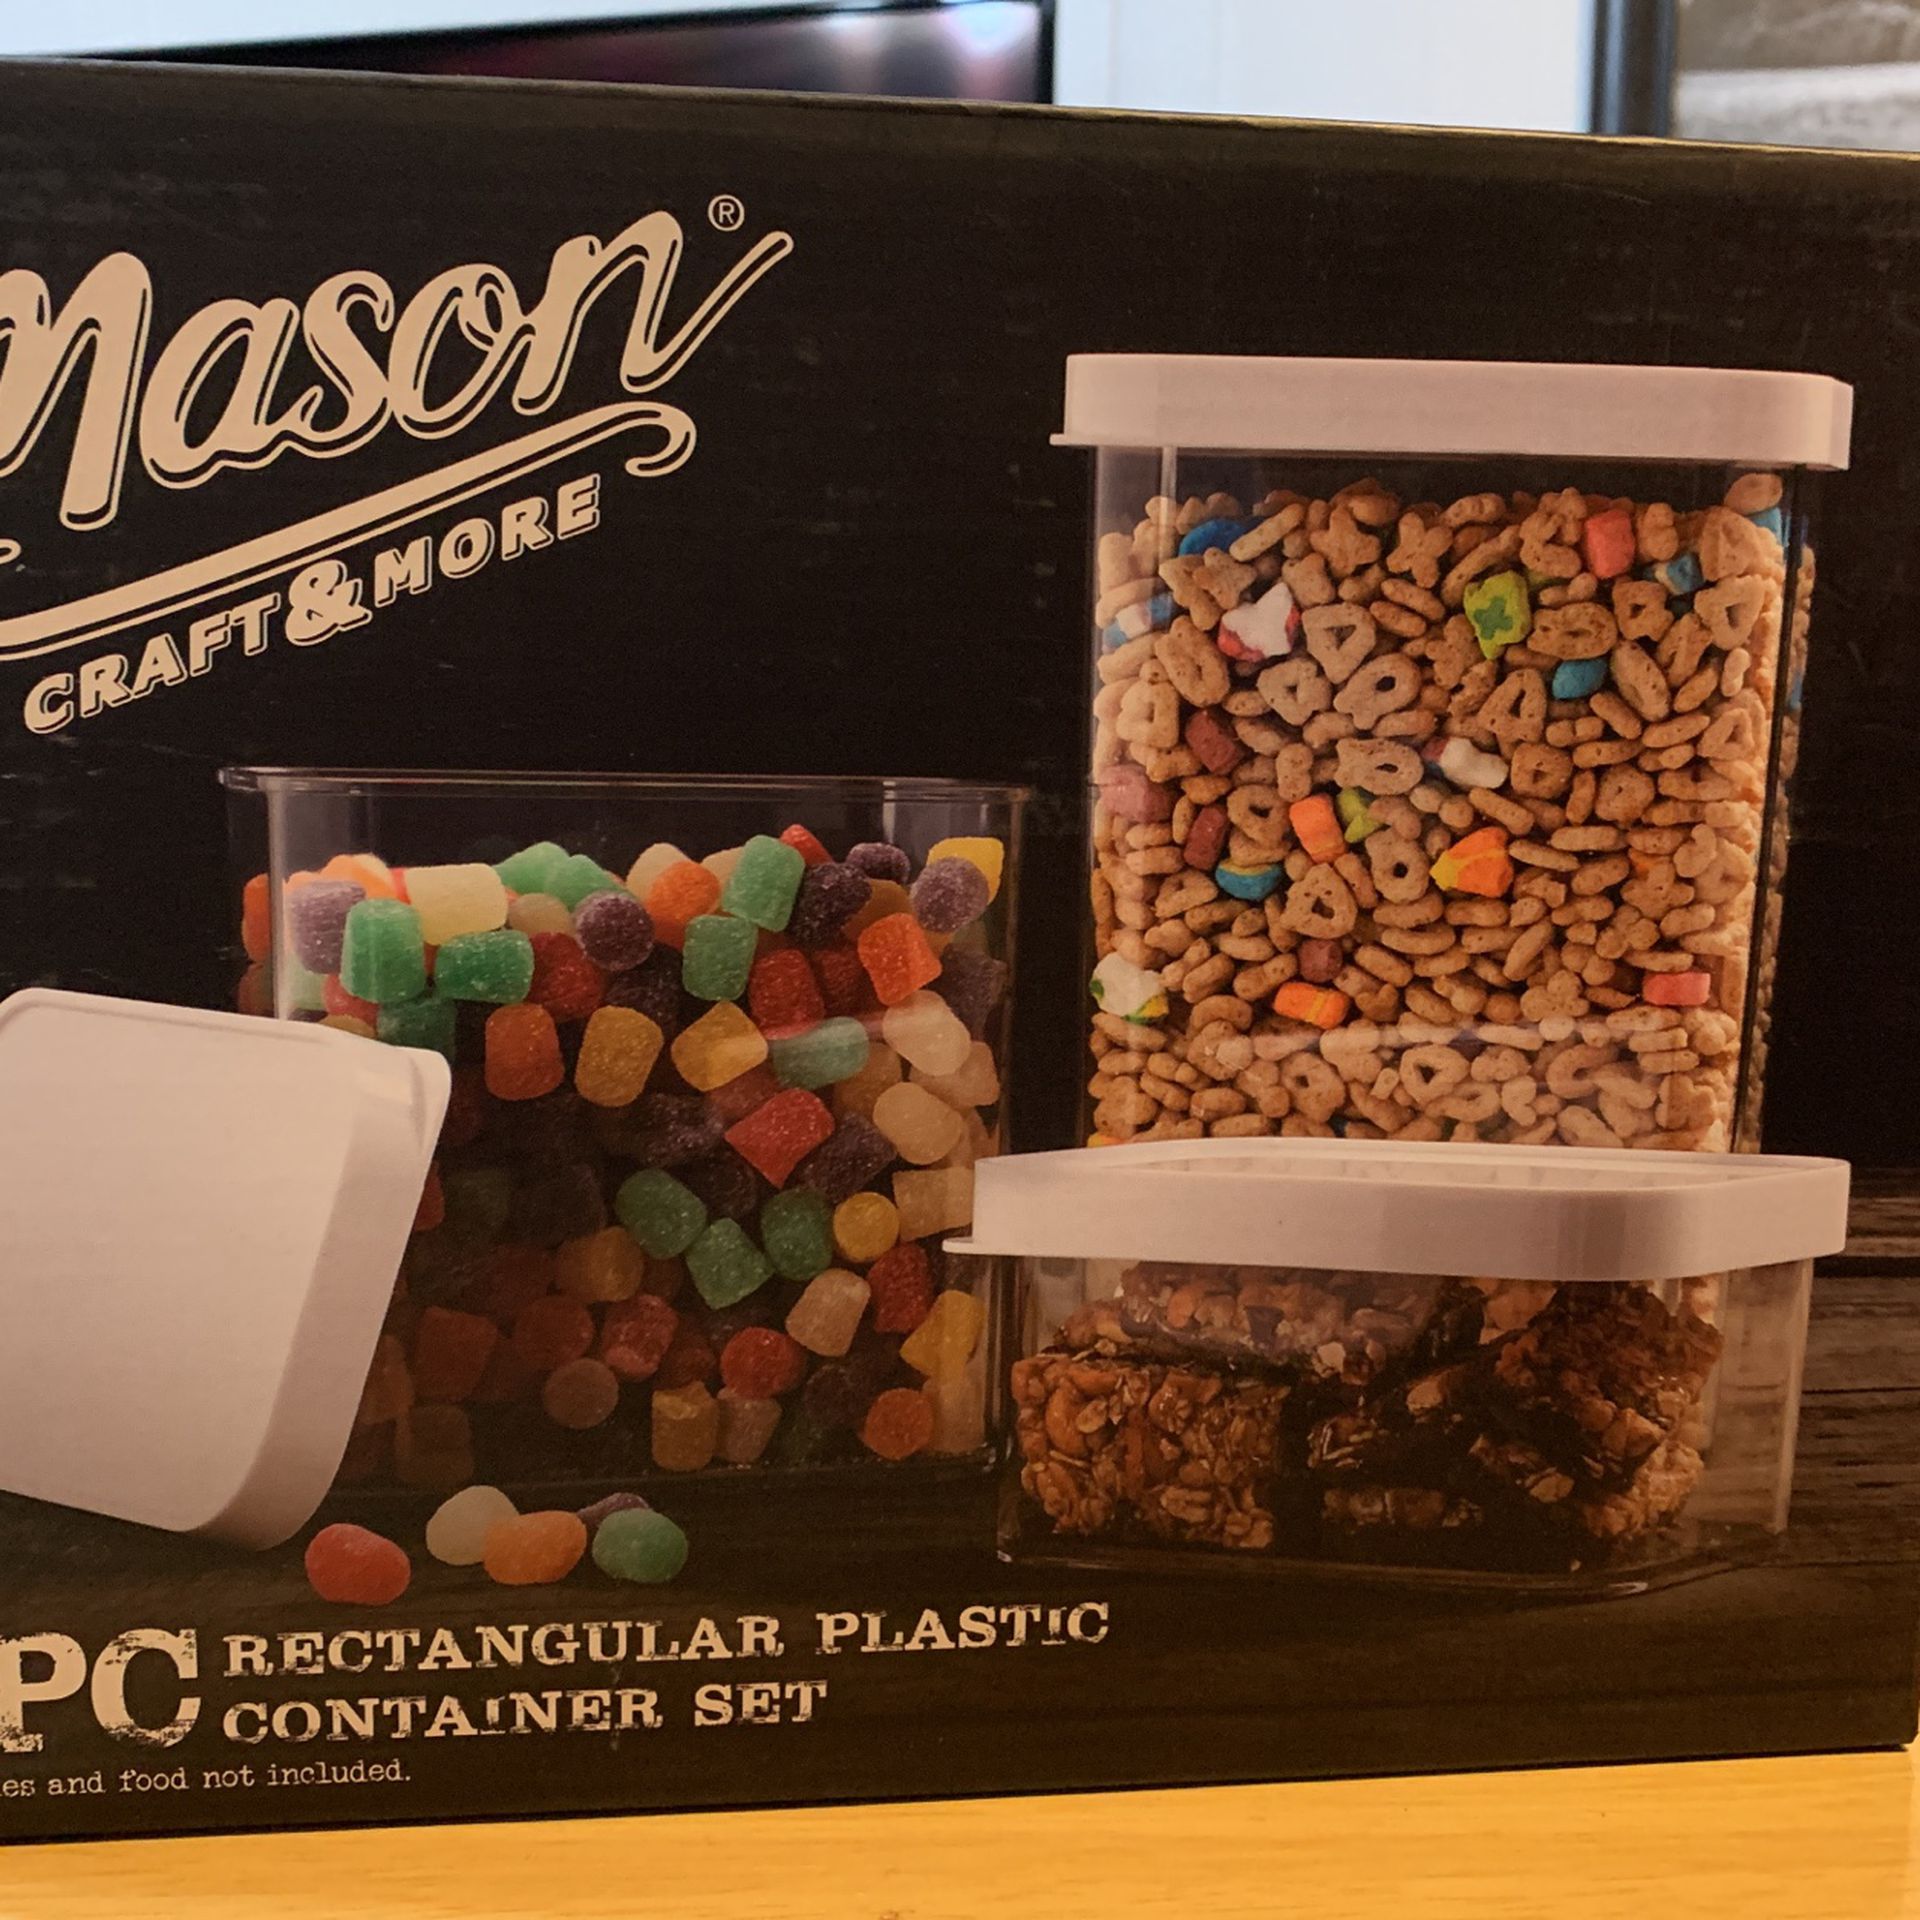 Mason craft & More (6) piece rectangular plastic container set